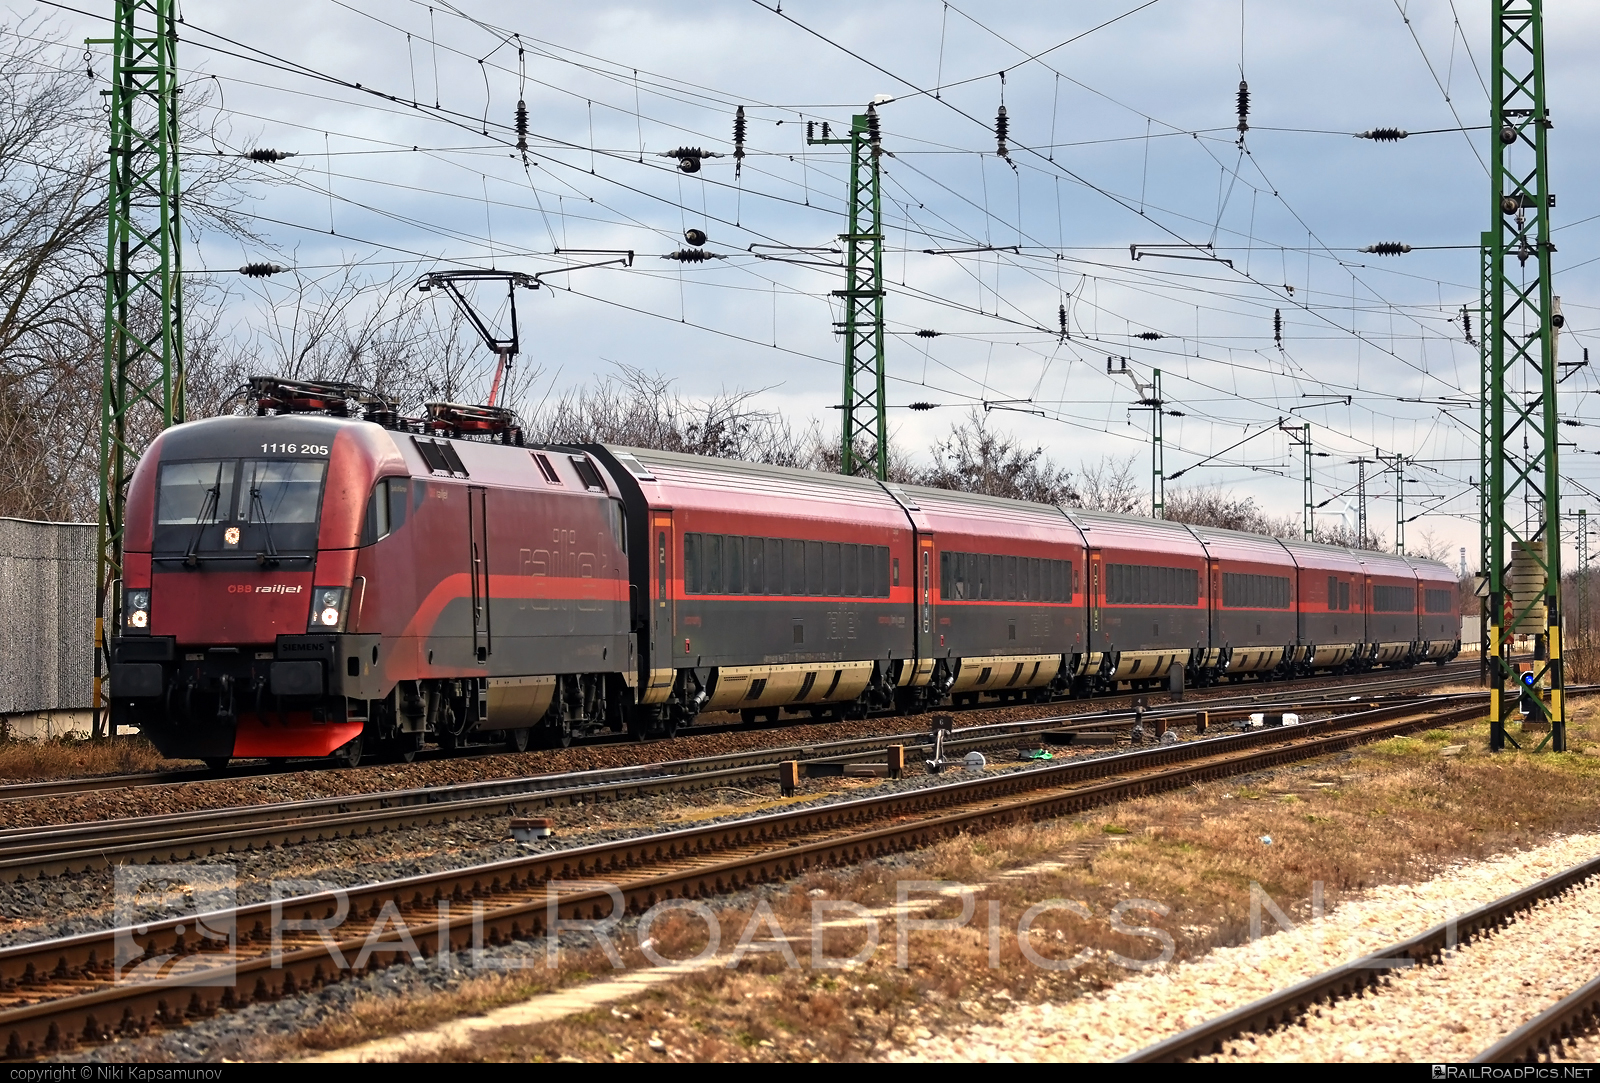 Siemens ES 64 U2 - 1116 205 operated by Österreichische Bundesbahnen #es64 #es64u2 #eurosprinter #obb #obbrailjet #osterreichischebundesbahnen #railjet #siemens #siemensEs64 #siemensEs64u2 #siemenstaurus #taurus #tauruslocomotive